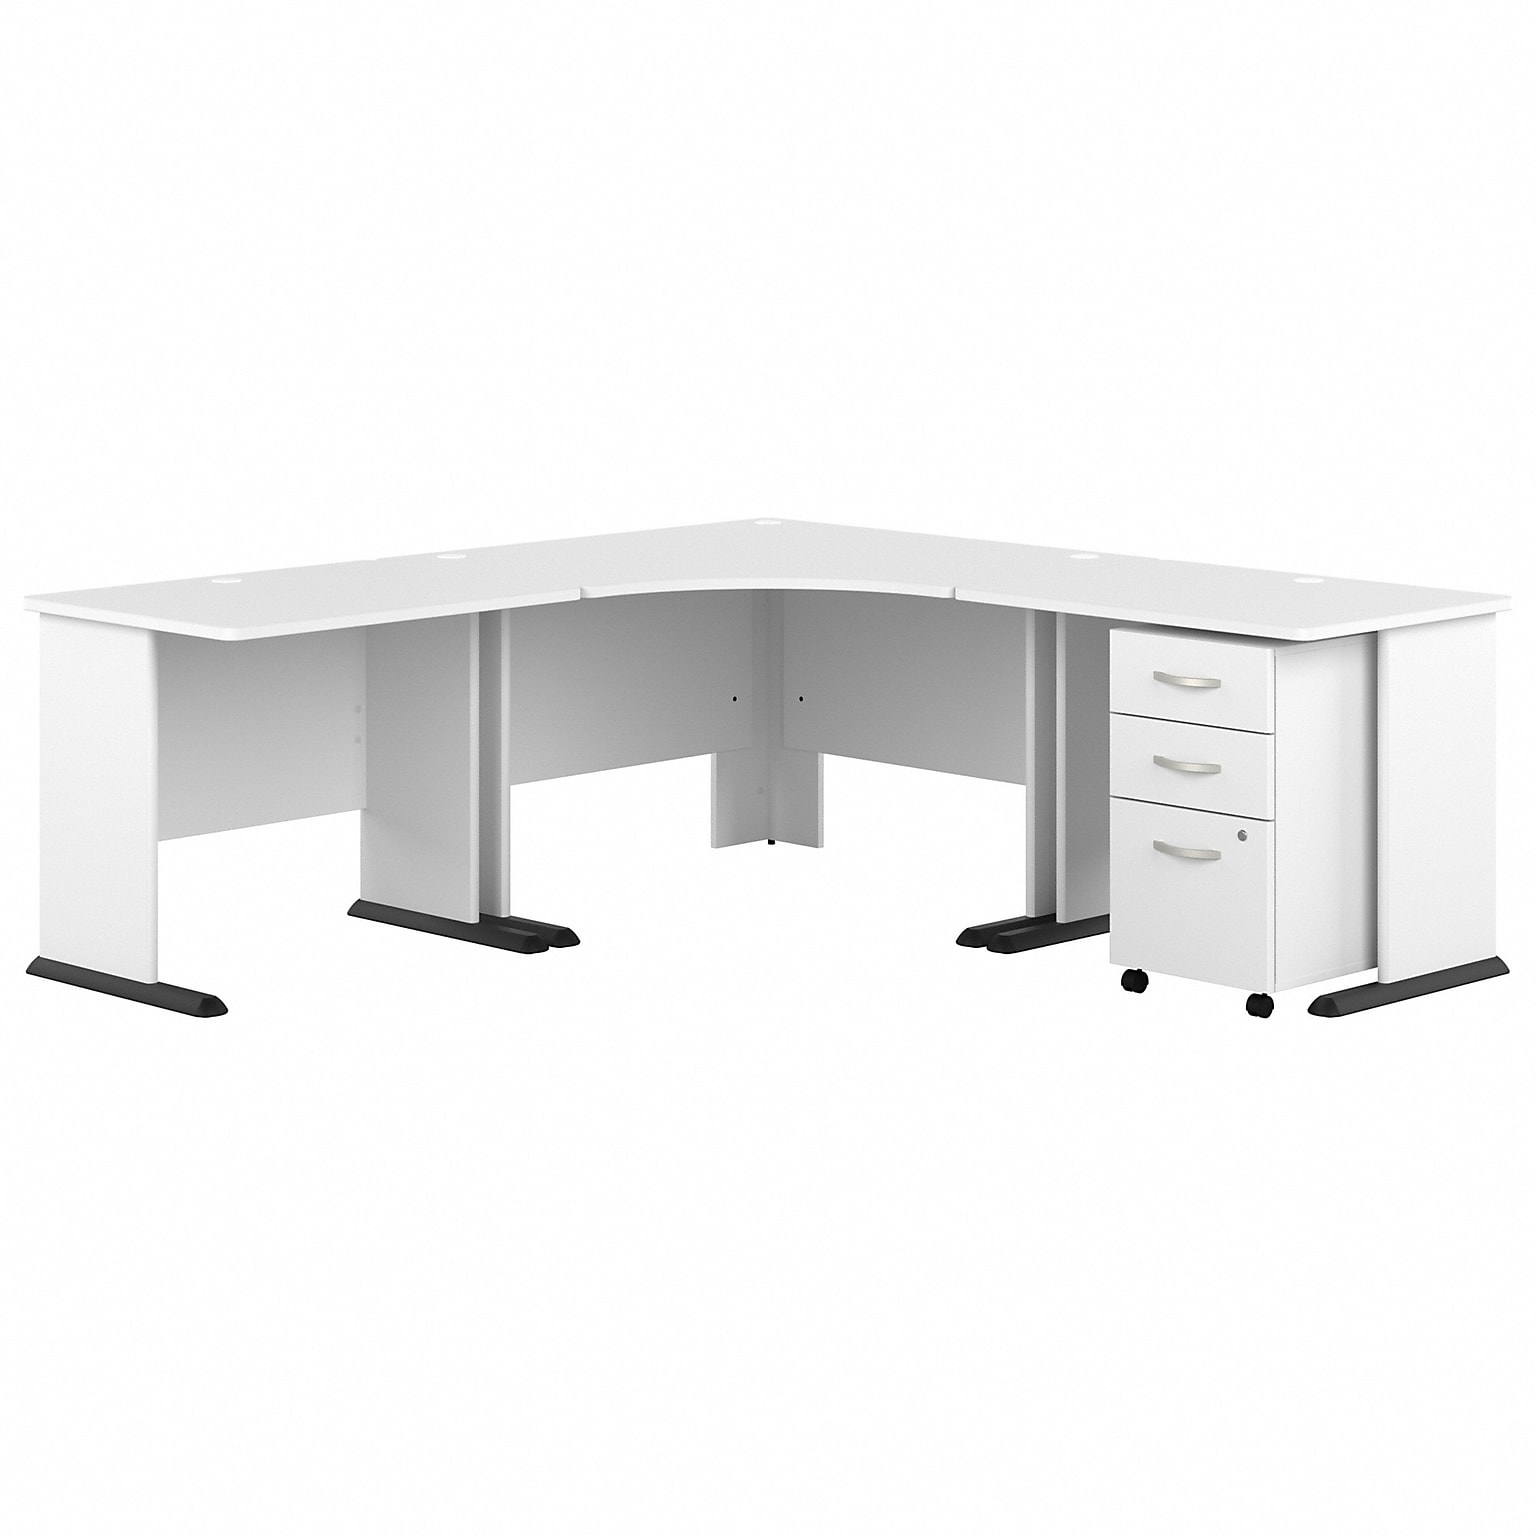 Bush Business Furniture Studio A 83W Large Corner Desk with 3 Drawer Mobile File Cabinet, White (STA003WHSU)